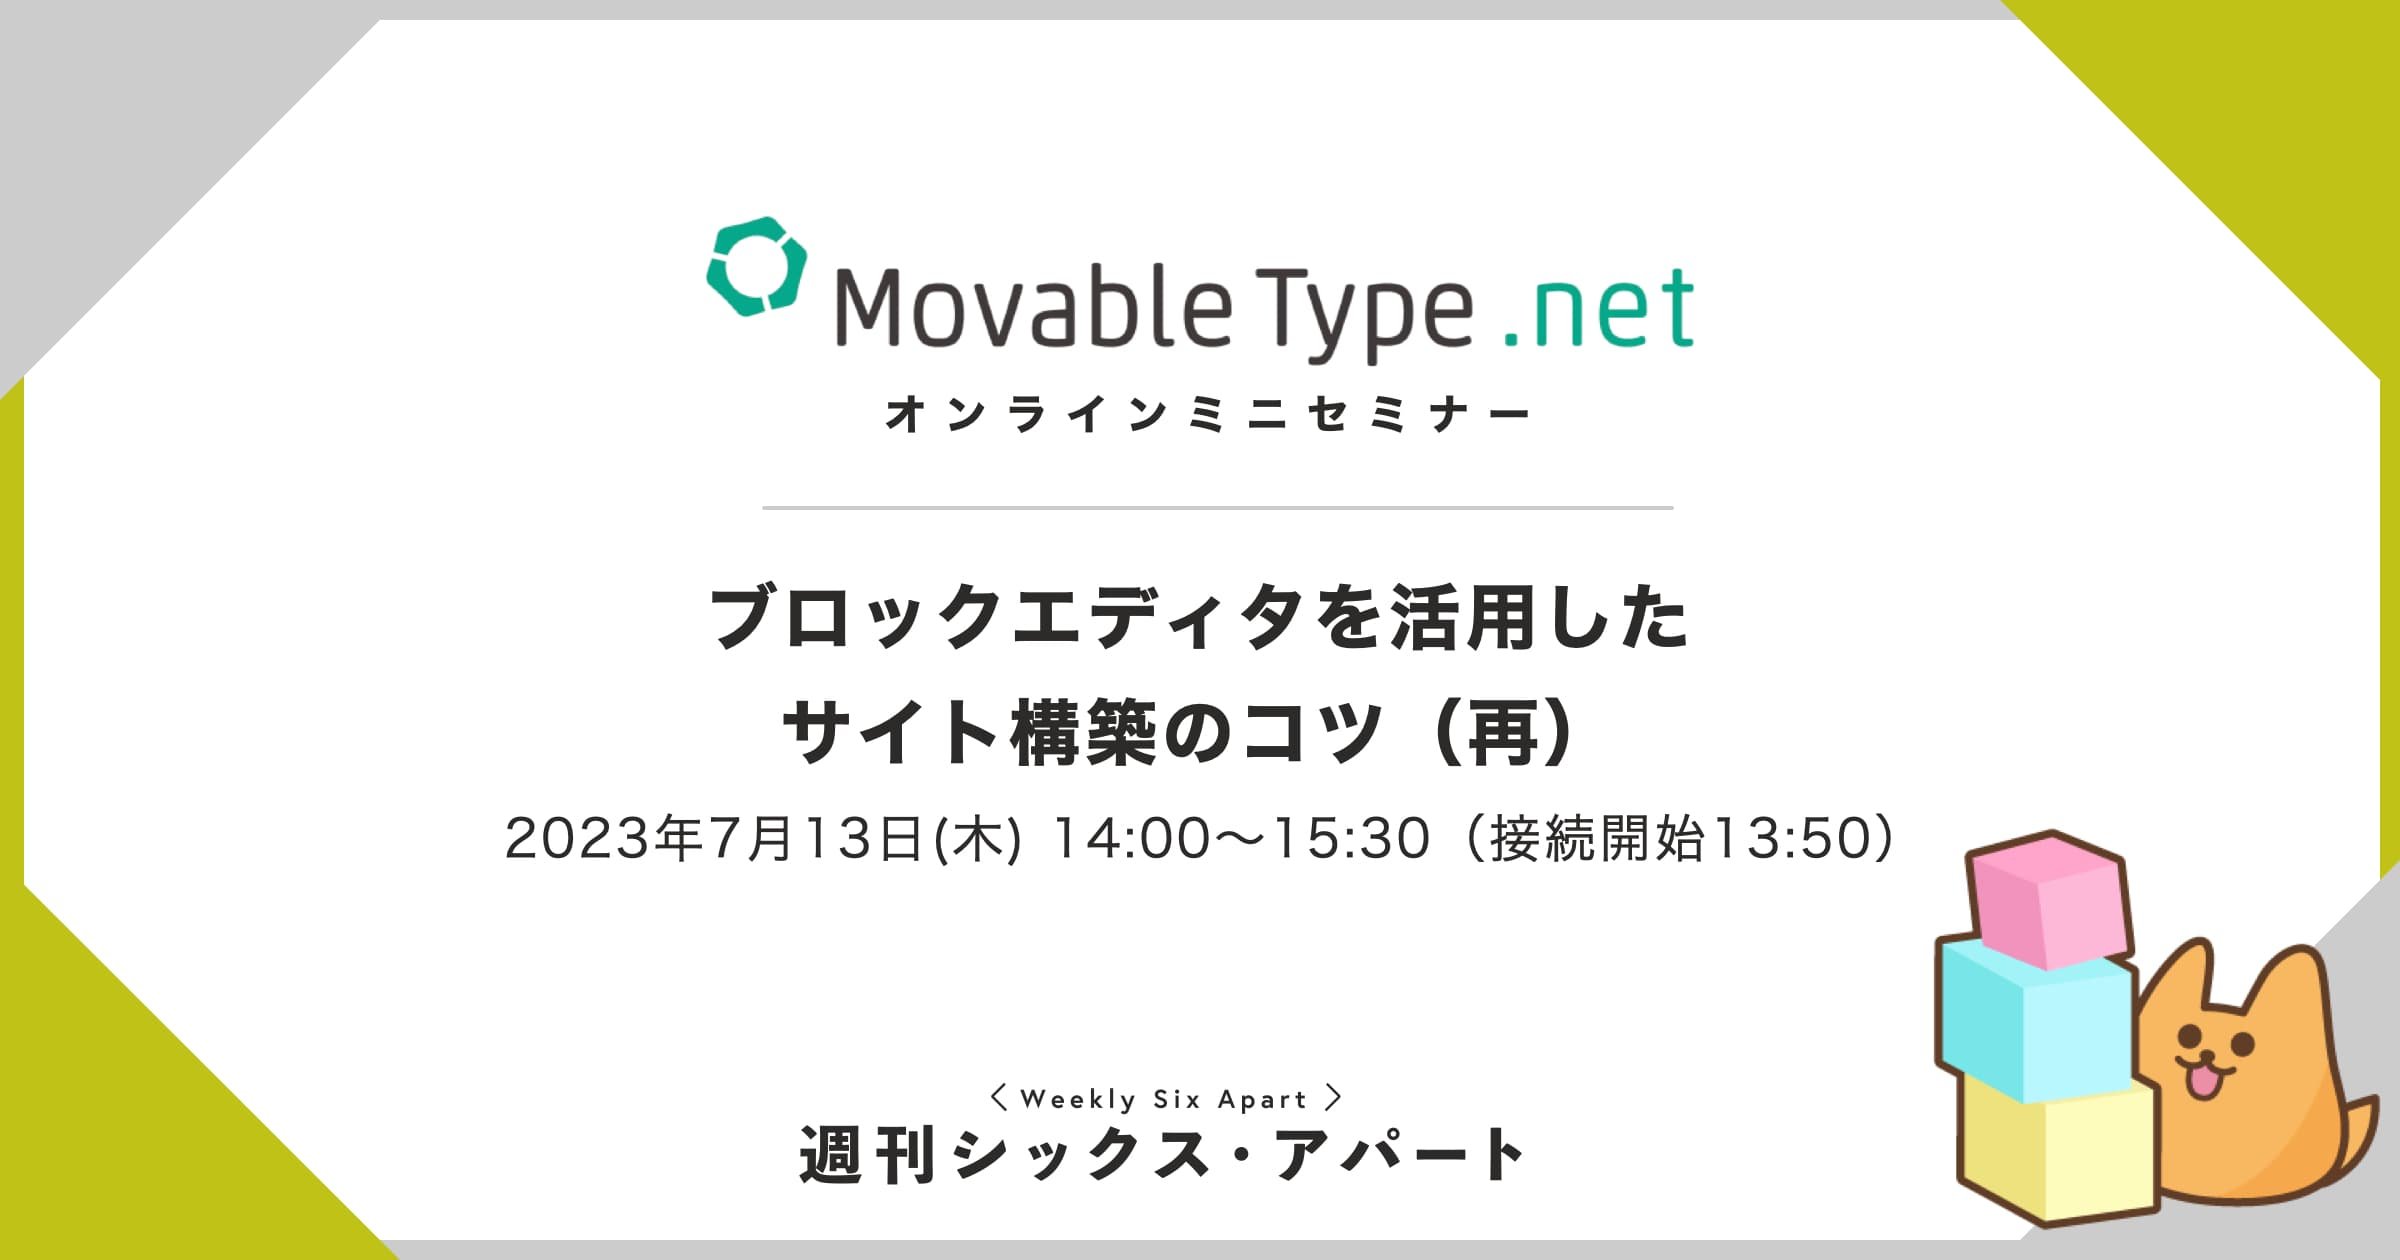 7/13木「MovableType.net のブロックエディタを活用したサイト構築のコツ」セミナー開催 #週刊SA